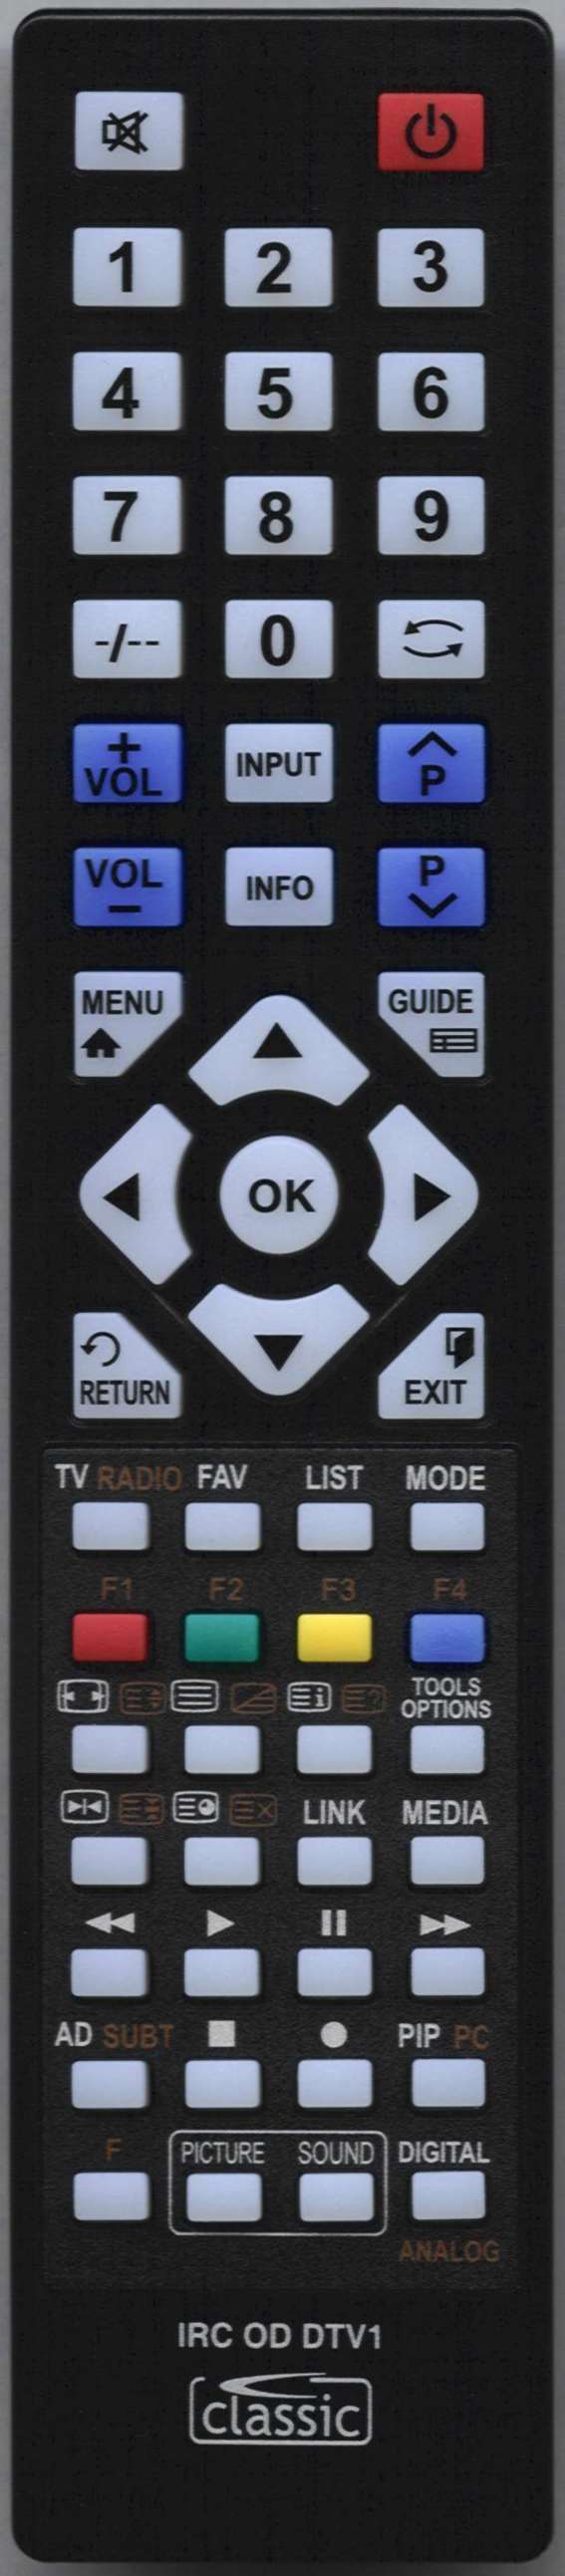 SONY KDL40W605BBU Remote Control Alternative